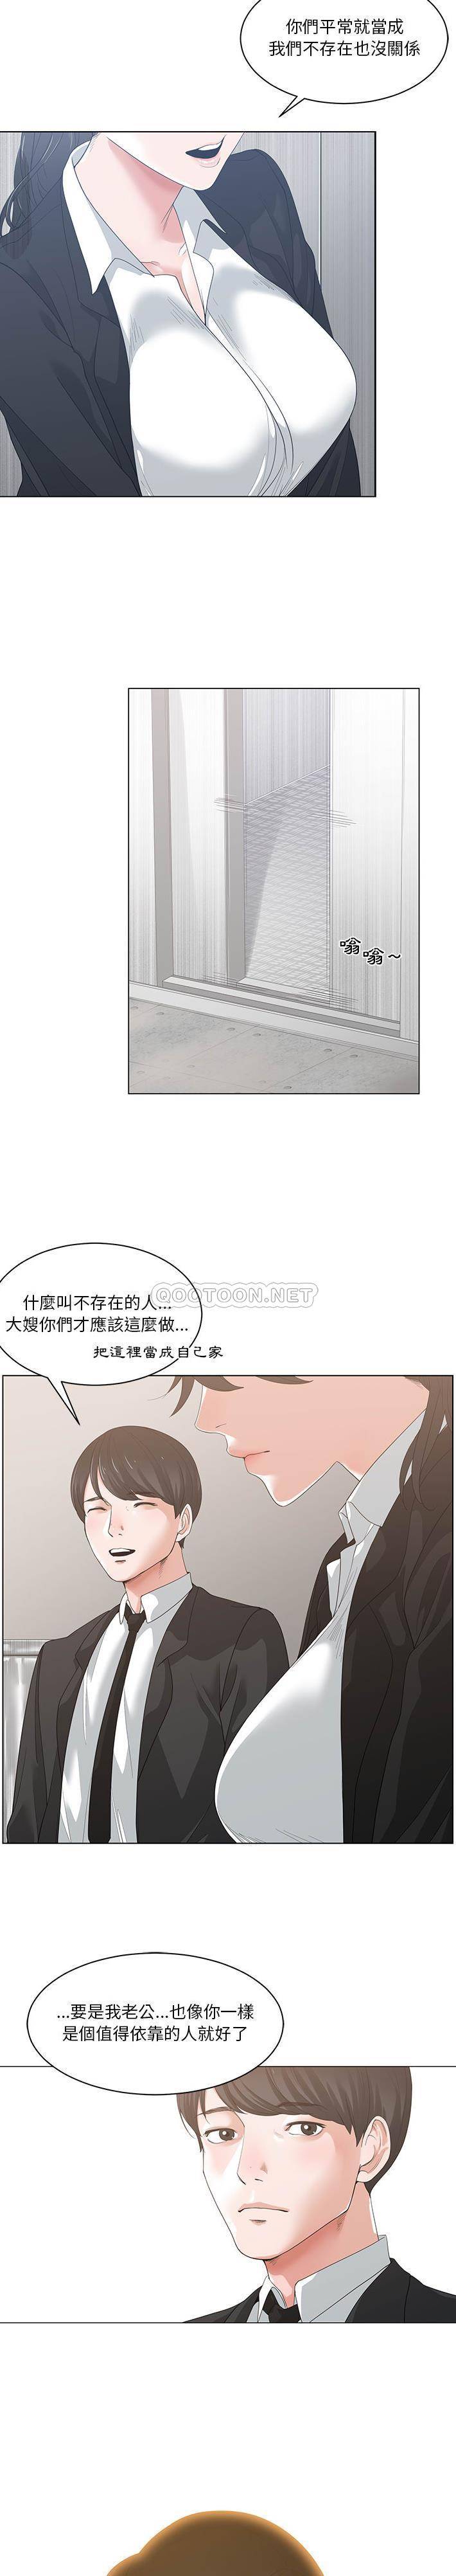 韩国污漫画 你才是真愛 第1话 15